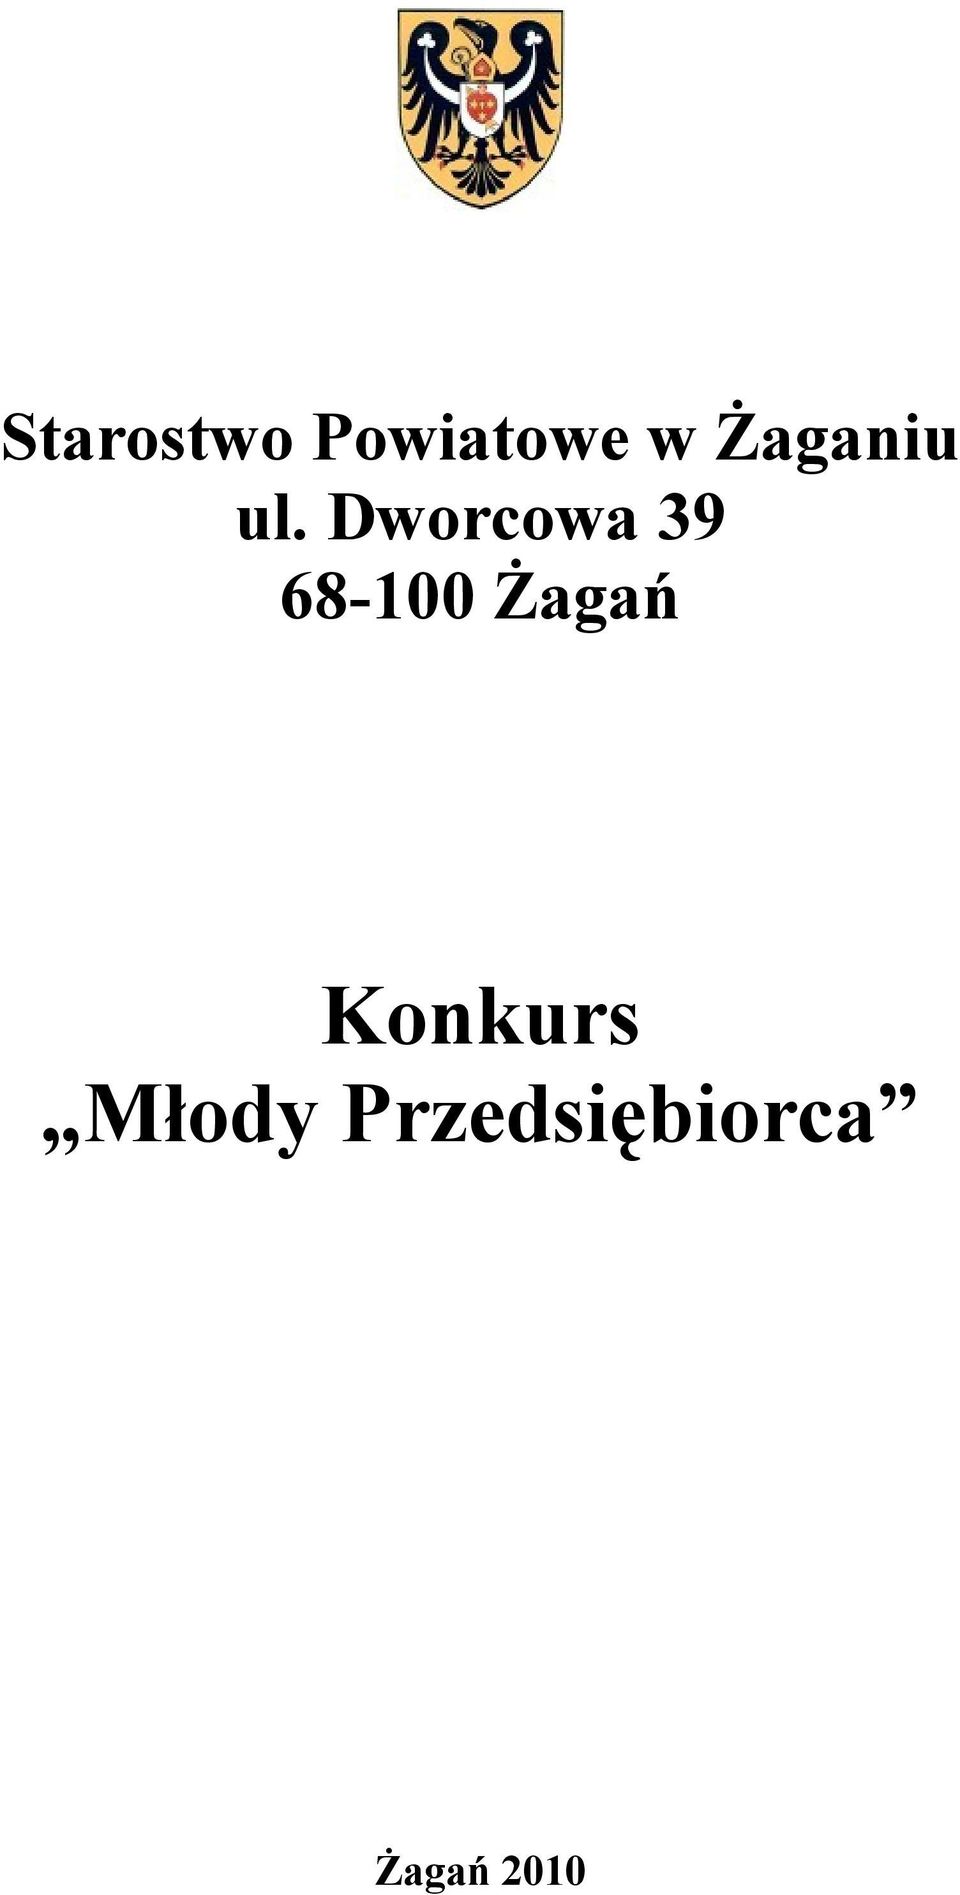 Dworcowa 39 68-100 Żagań